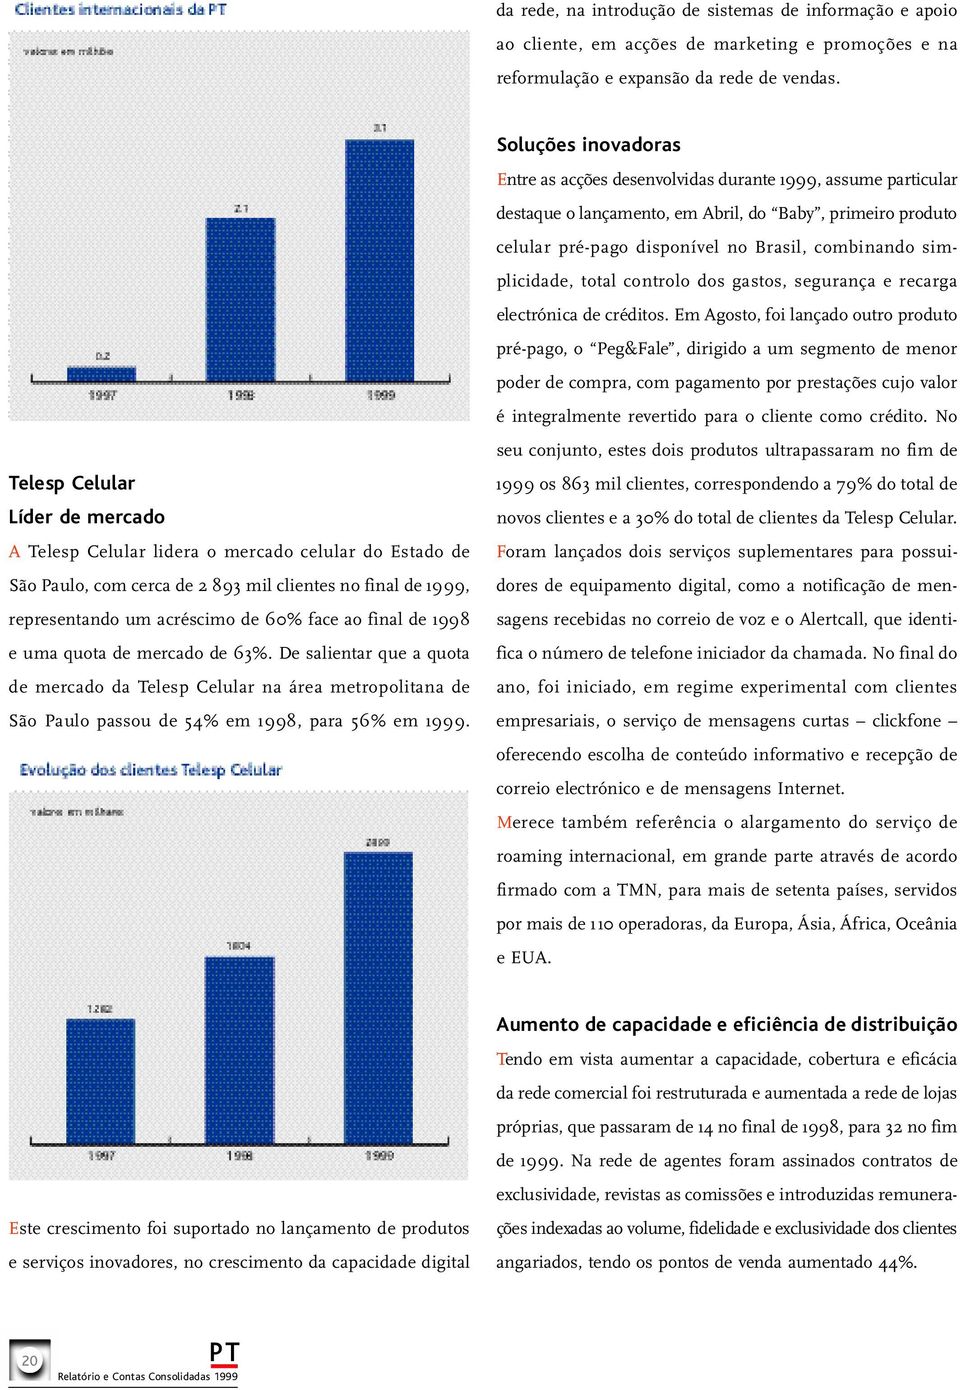 final de ı998 e uma quota de mercado de 63%. De salientar que a quota de mercado da Telesp Celular na área metropolitana de São Paulo passou de 54% em ı998, para 56% em ı999.